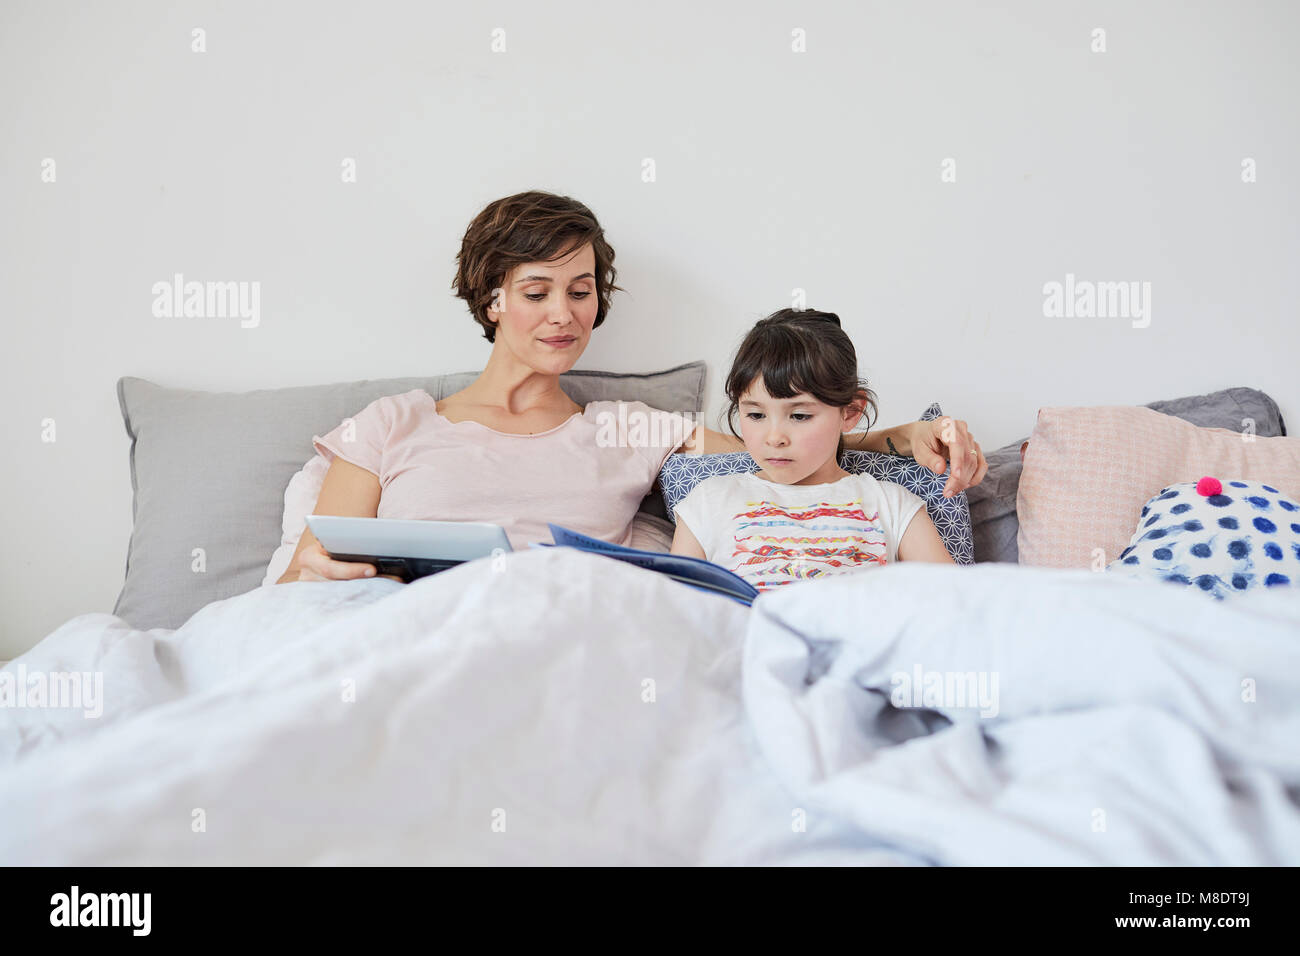 Mère et fille se détendre au lit, fille reading book, mère holding digital tablet Banque D'Images